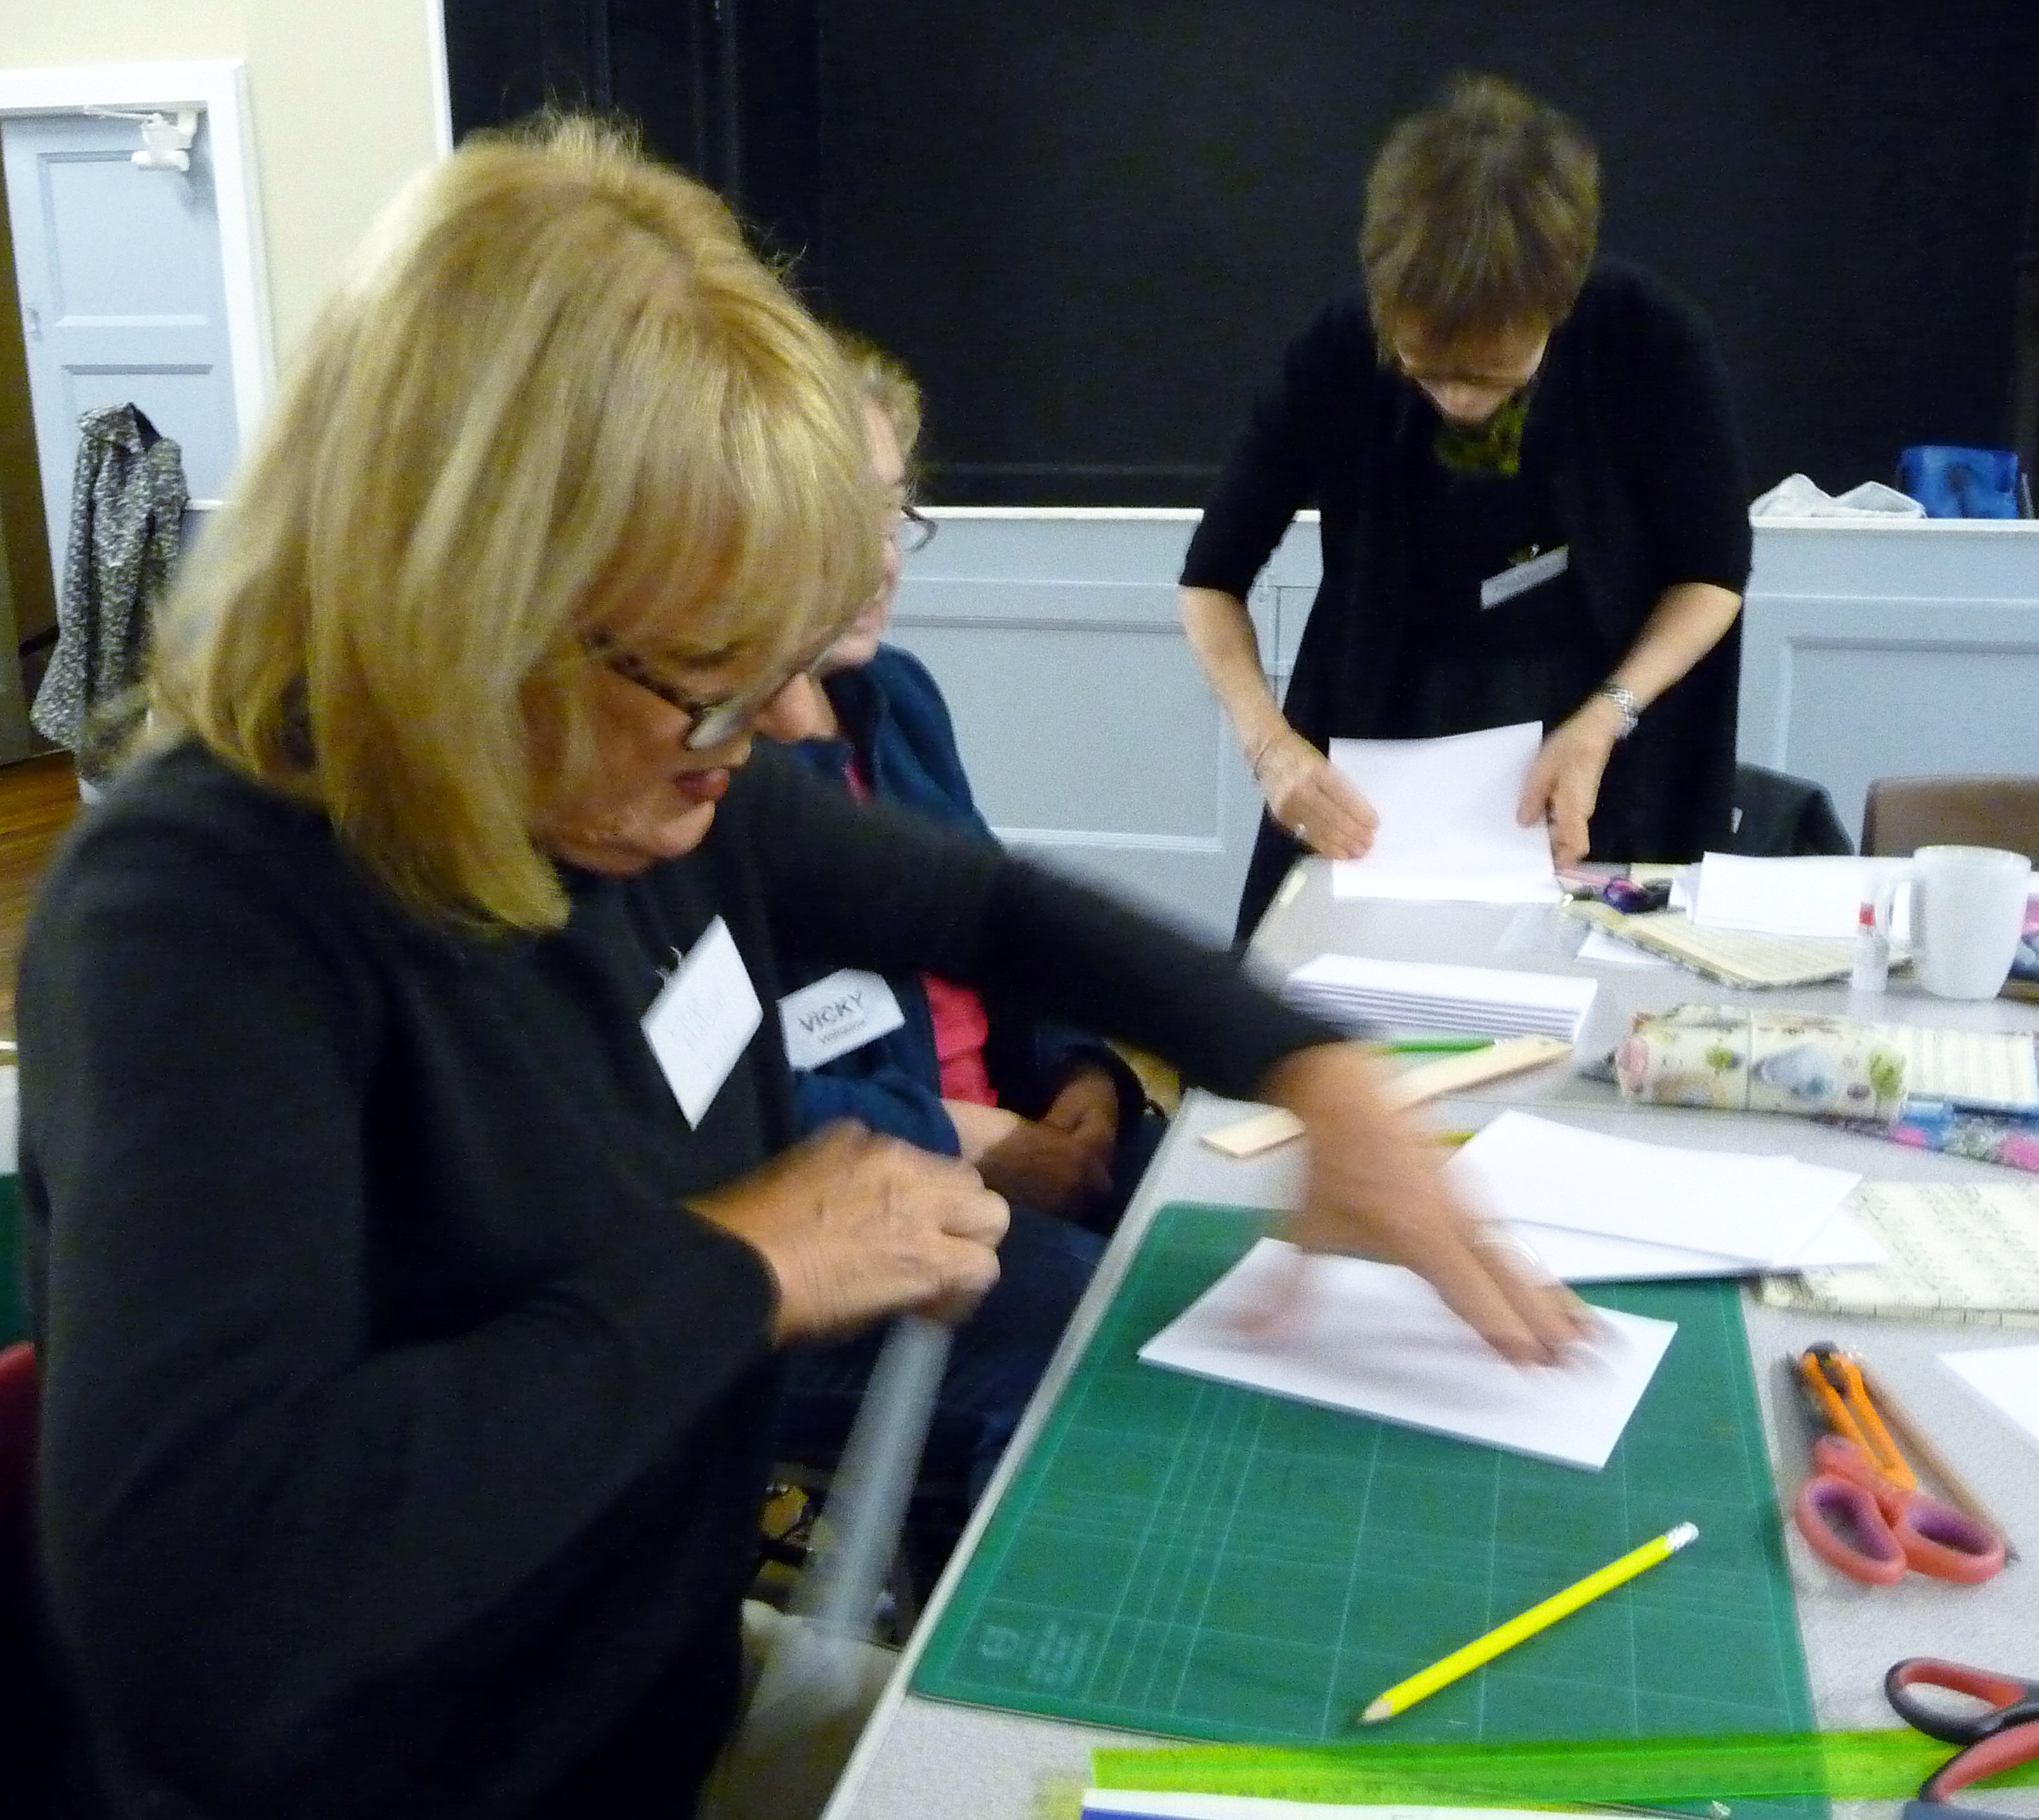 Bookbinding workshop- preparing the signatures